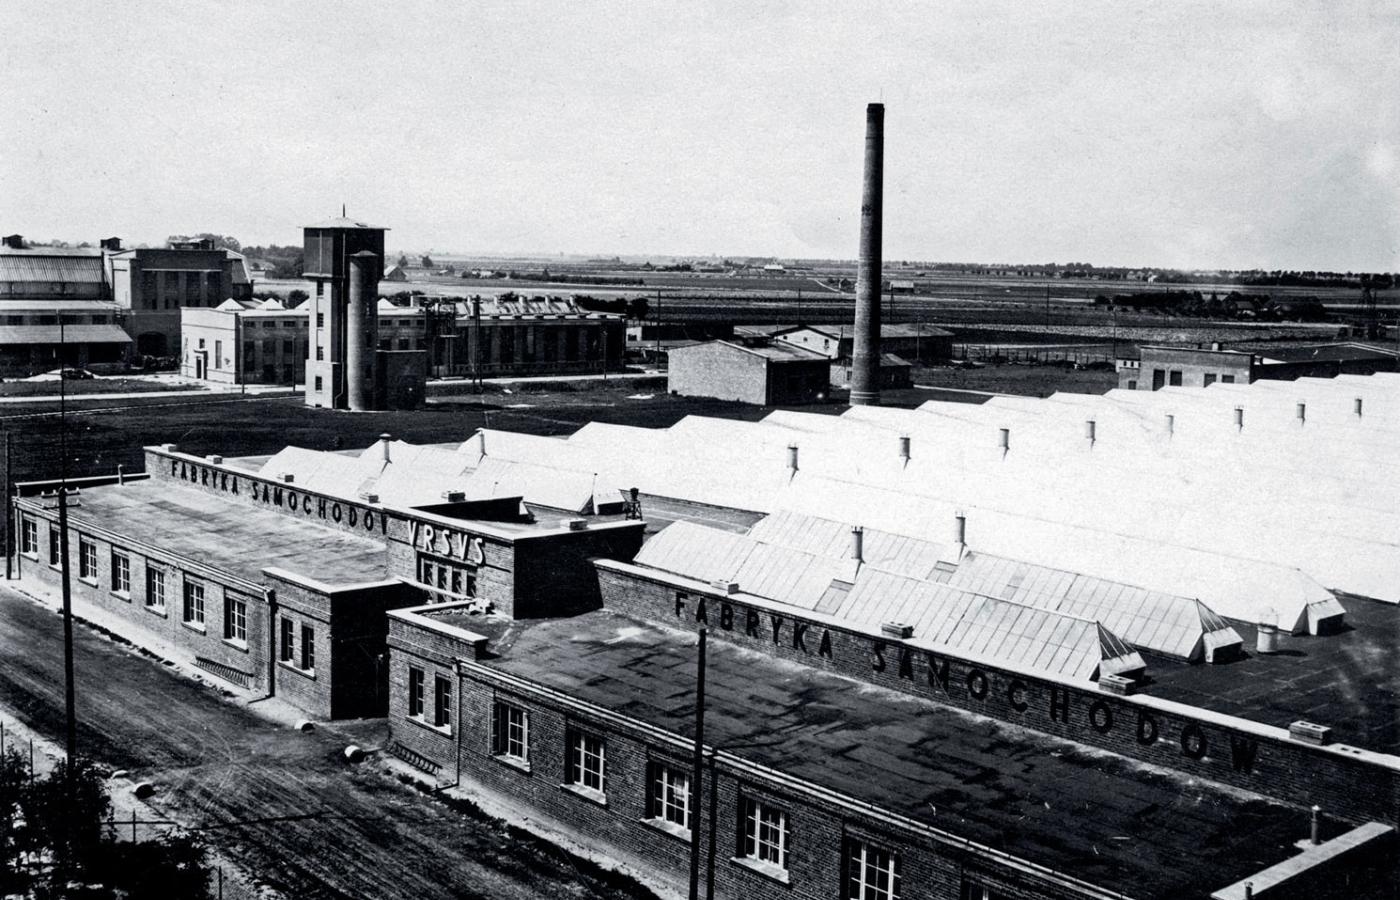 Fabryka Ursus w Czechowicach pod Warszawą, gdzie przed wojną produkowano samochody, motocykle i czołgi, a po wojnie ciągniki rolnicze. Fot. z lat 30.